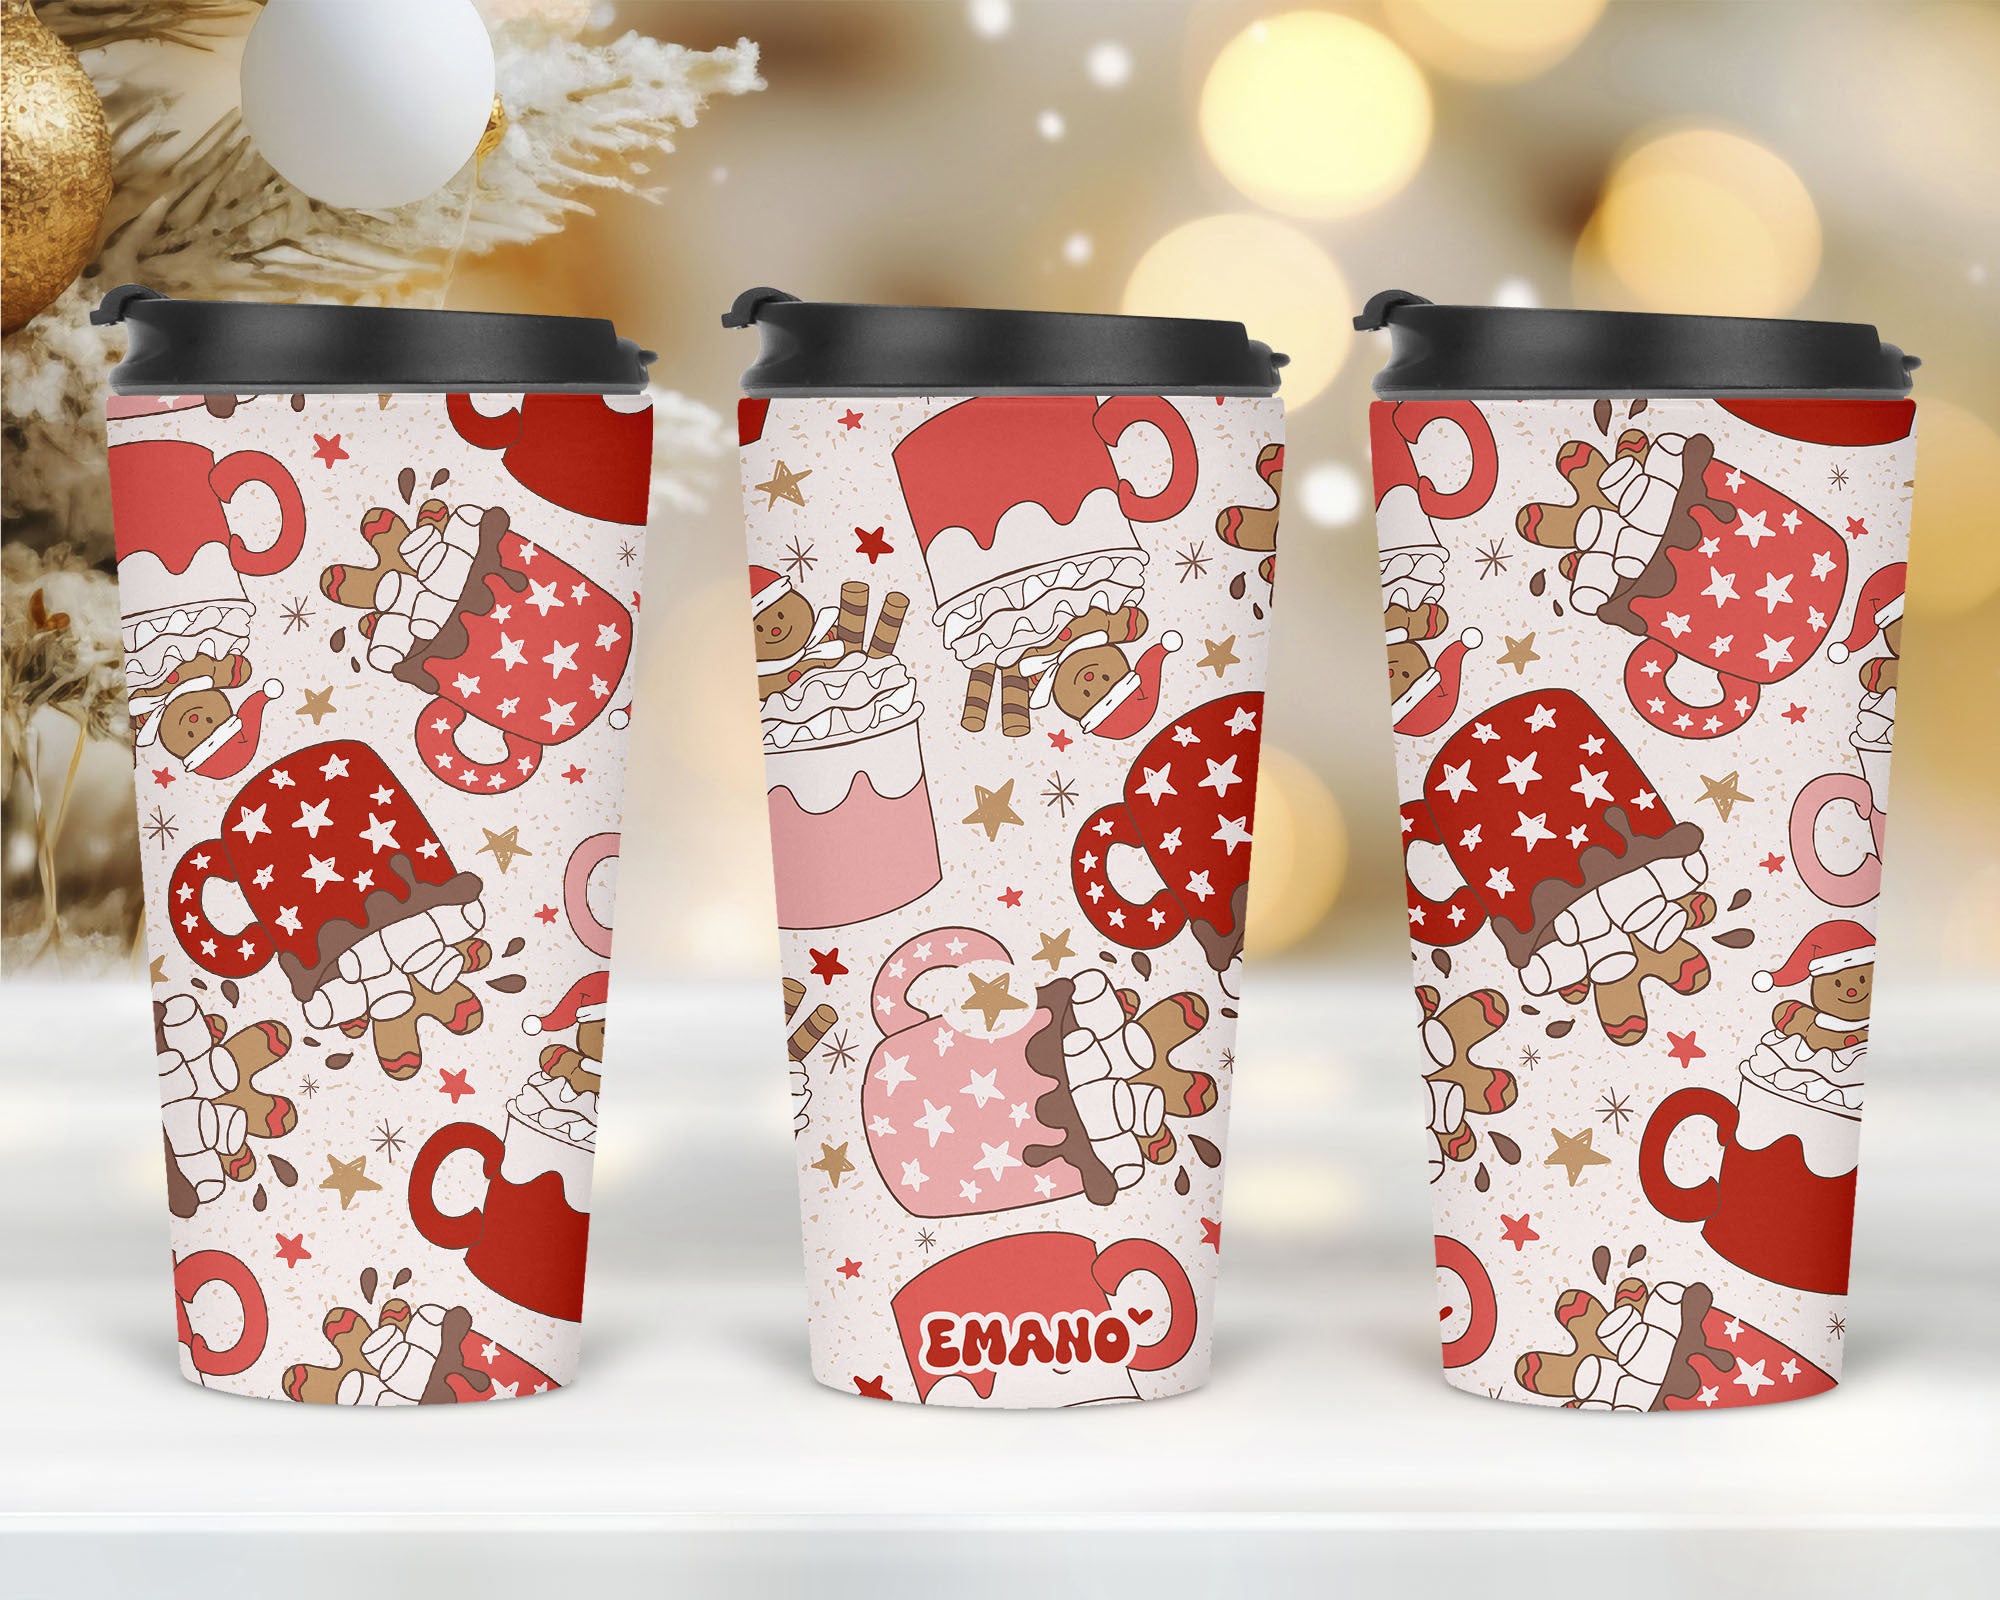 🎅✨ Égaillez vos instants avec le Verre Isotherme Emano spécial Noël, où chaque gorgée devient une célébration ! 🥤🌲 #EmanoNoël #VerreFestif #MagieDesFêtes"